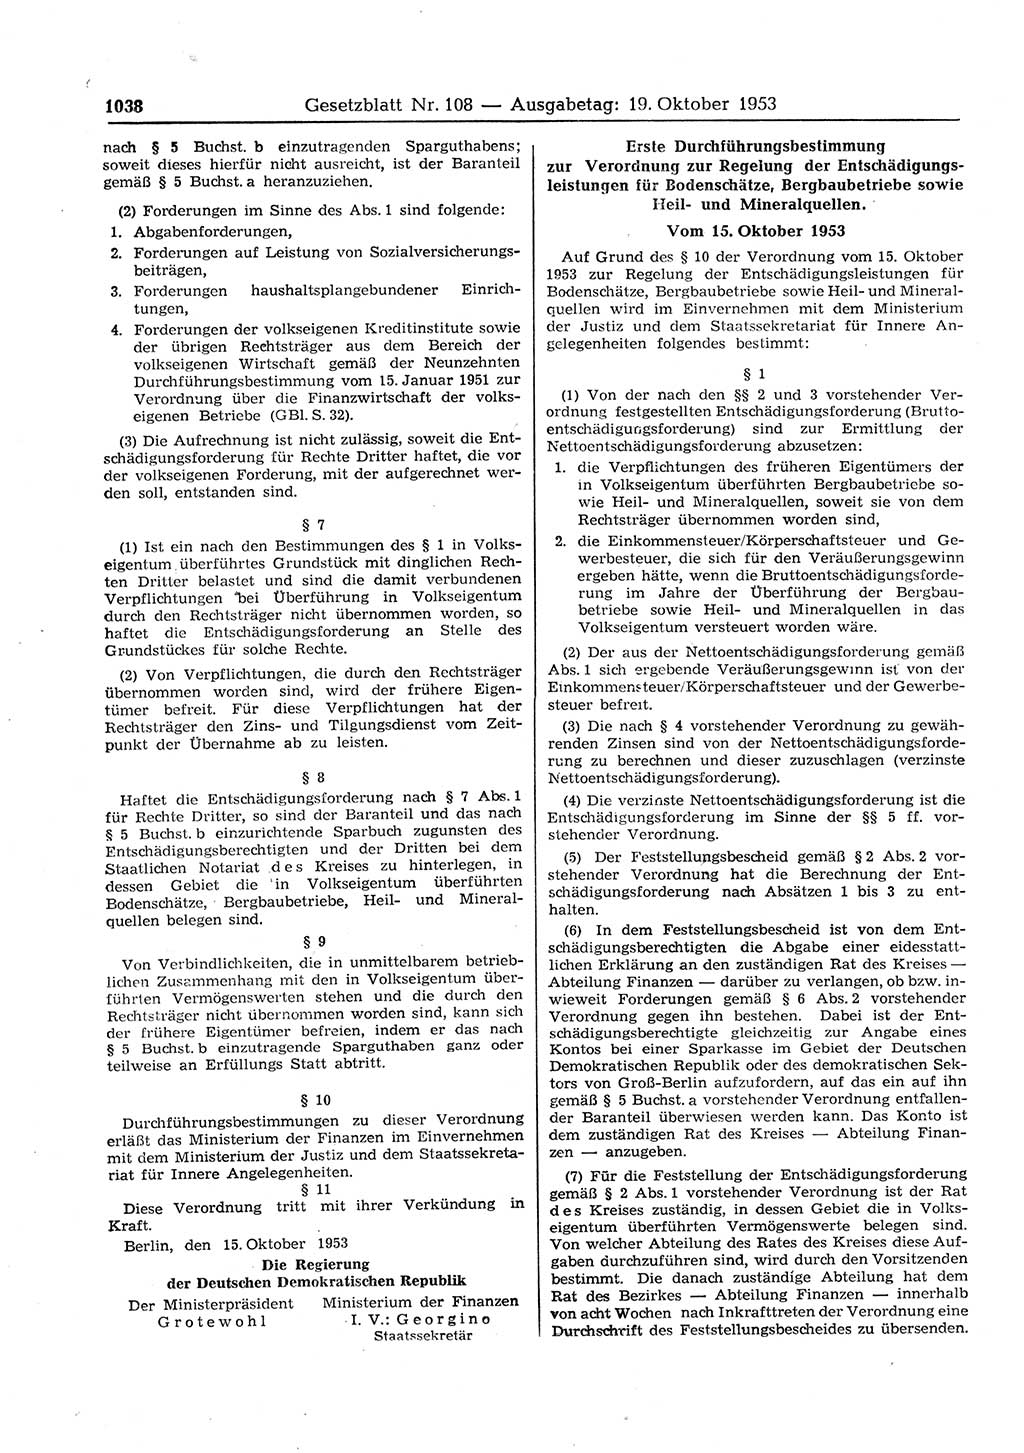 Gesetzblatt (GBl.) der Deutschen Demokratischen Republik (DDR) 1953, Seite 1038 (GBl. DDR 1953, S. 1038)